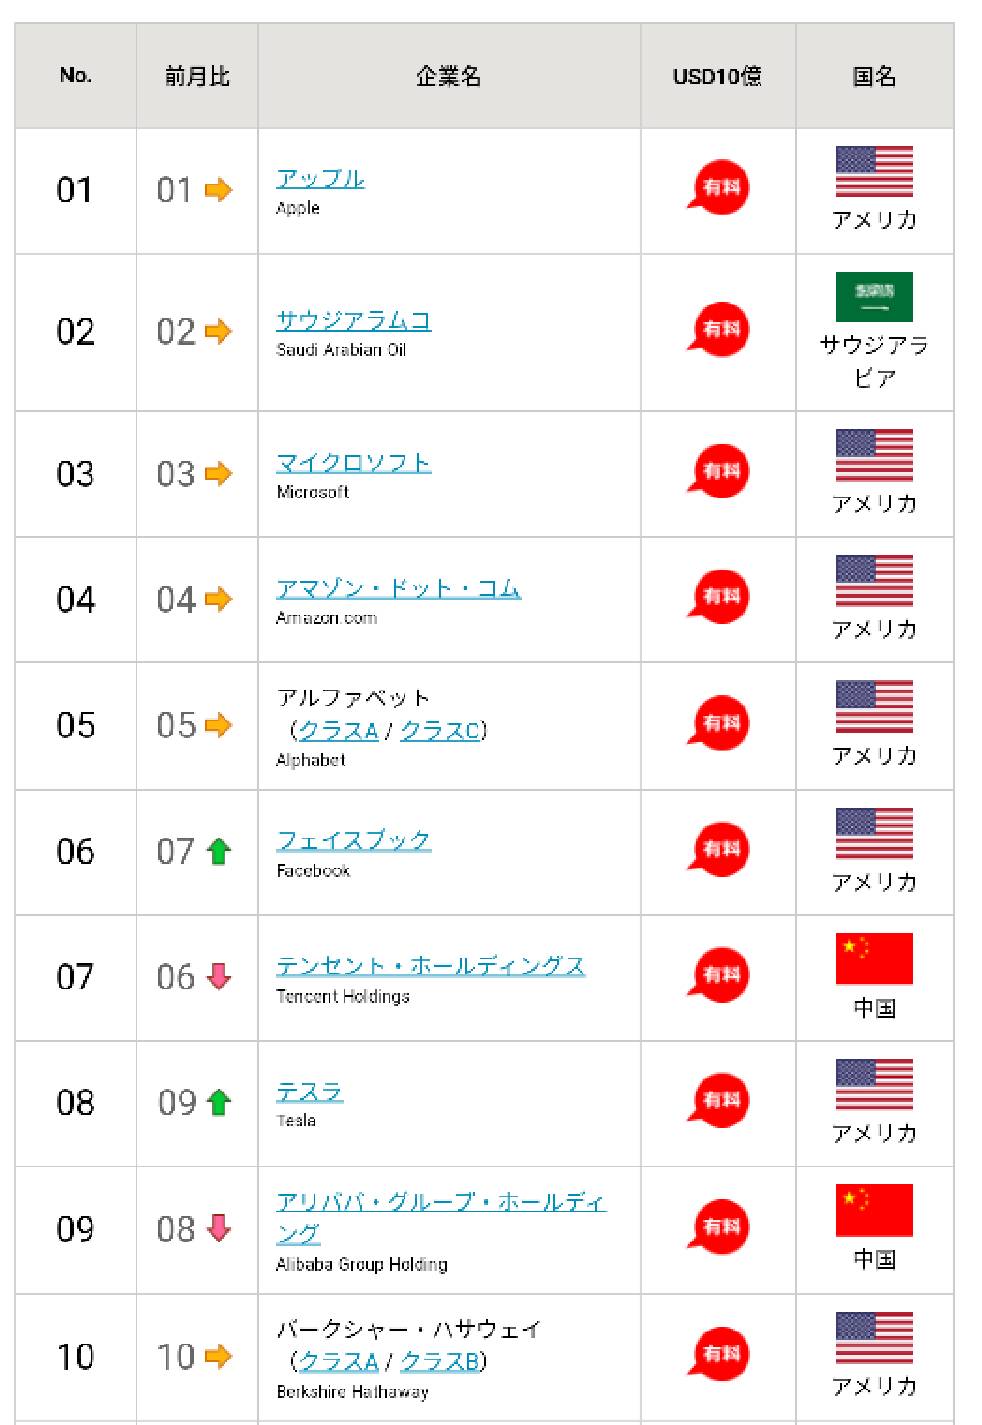 world-company-ranking